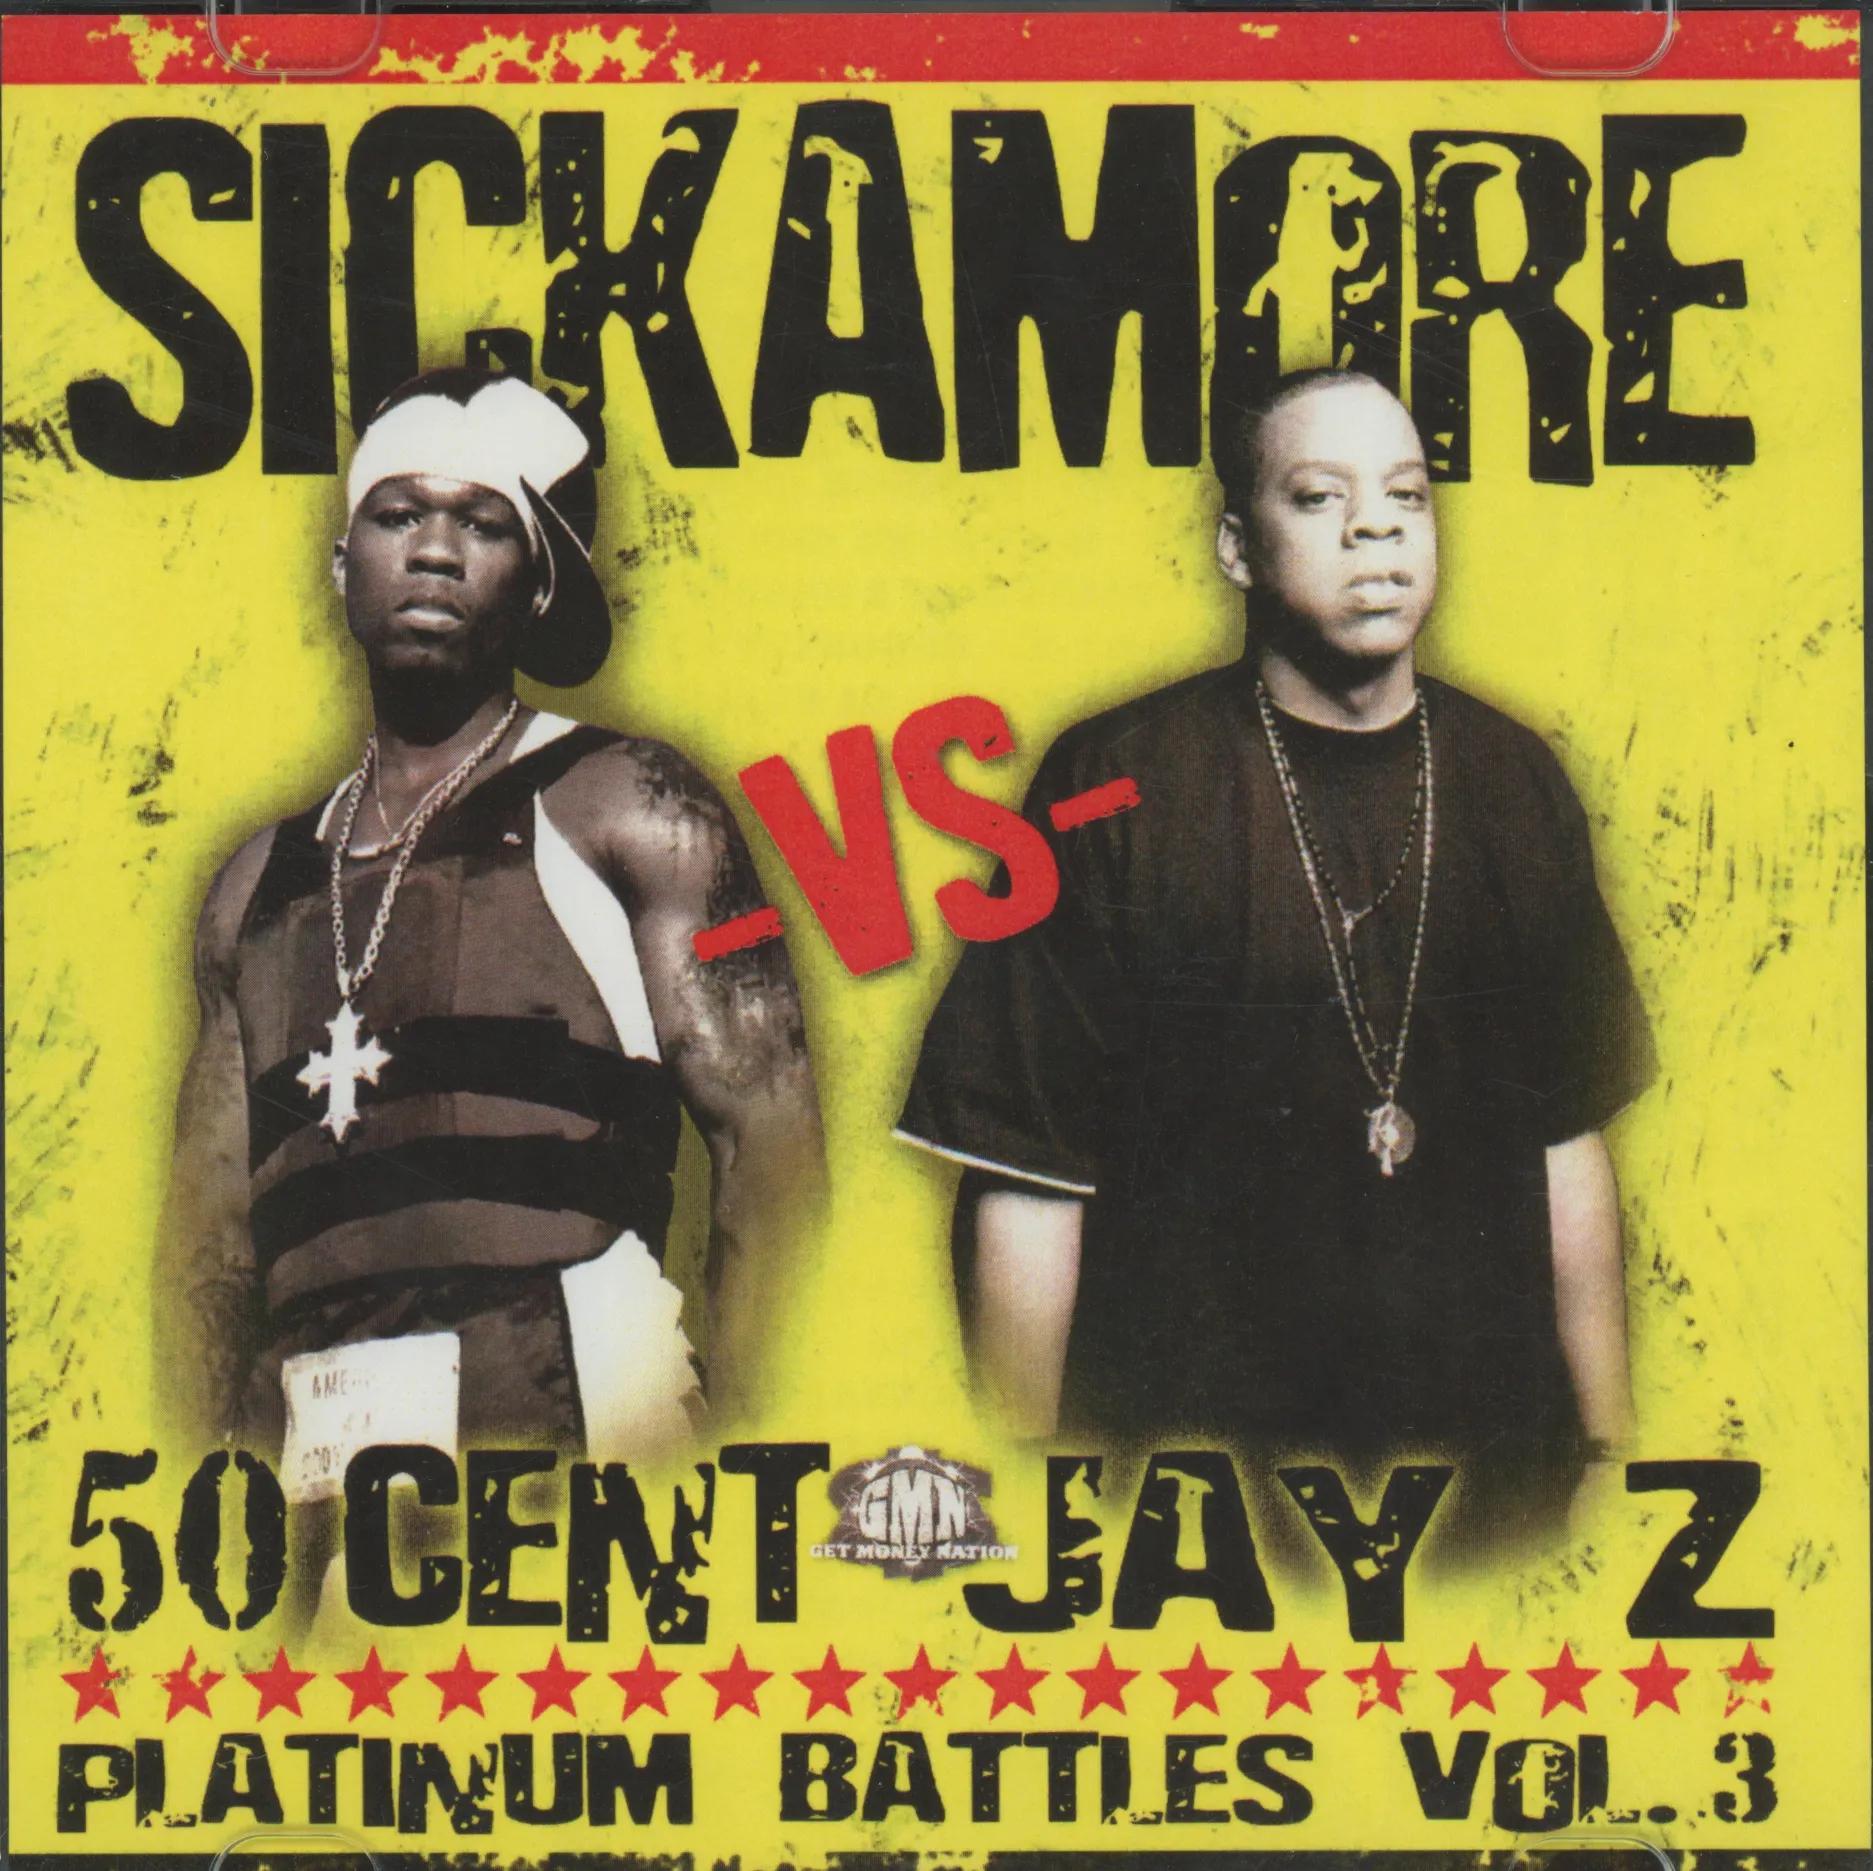 Platinum Battles Vol. 3 (50 Cent vs. Jay-Z)